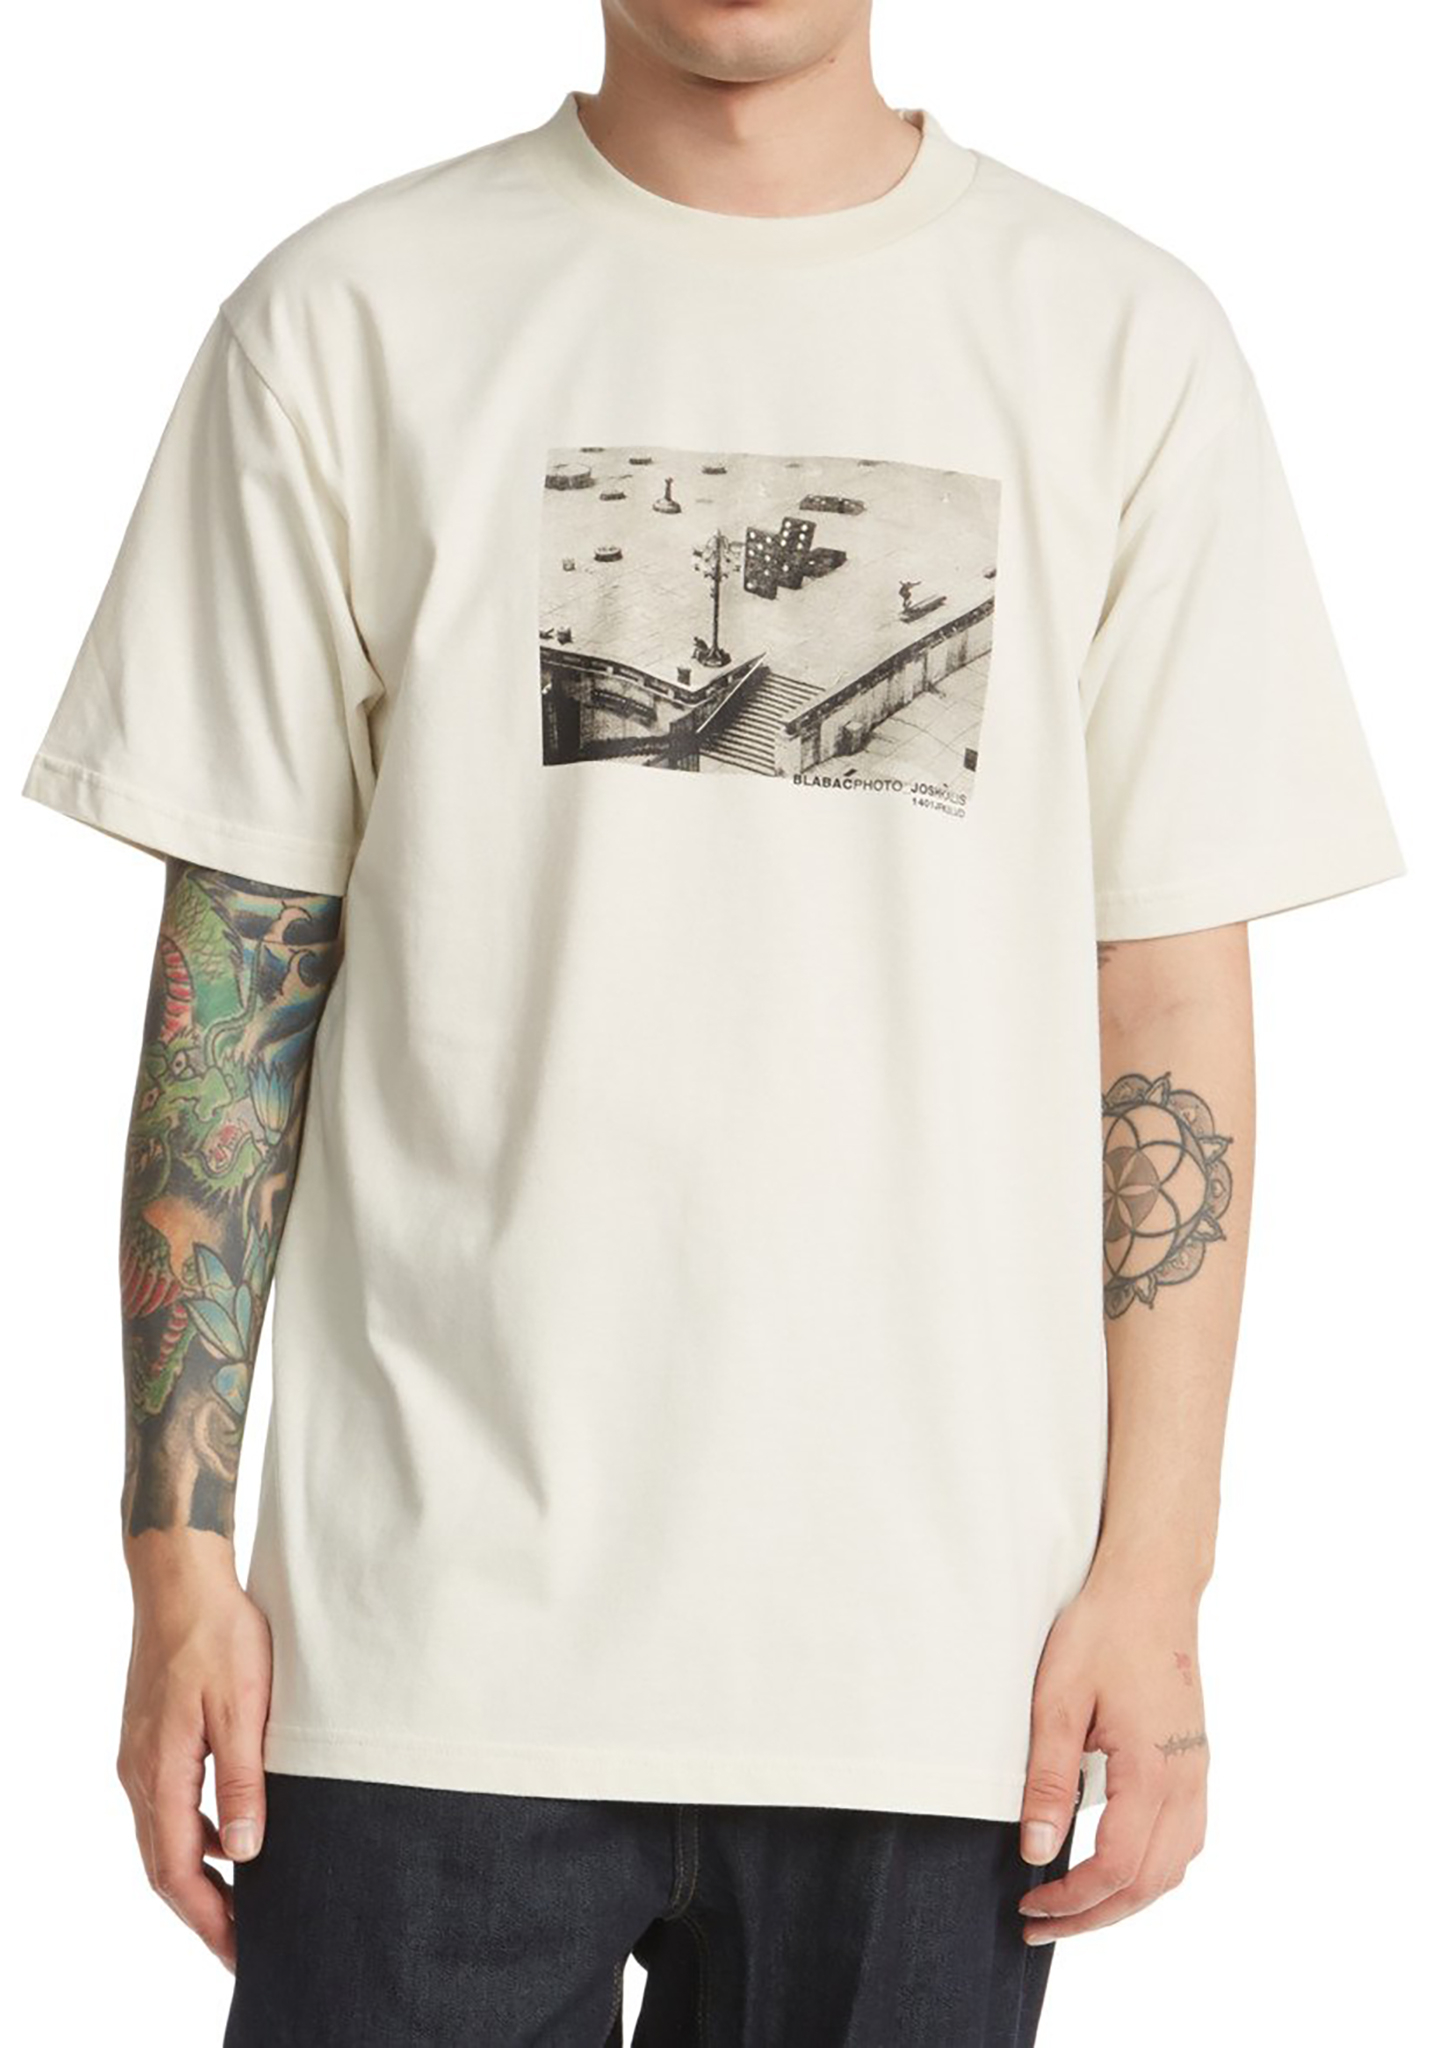 DC Blabac Photo 1401 T-Shirt lilie weiß sauer waschen S